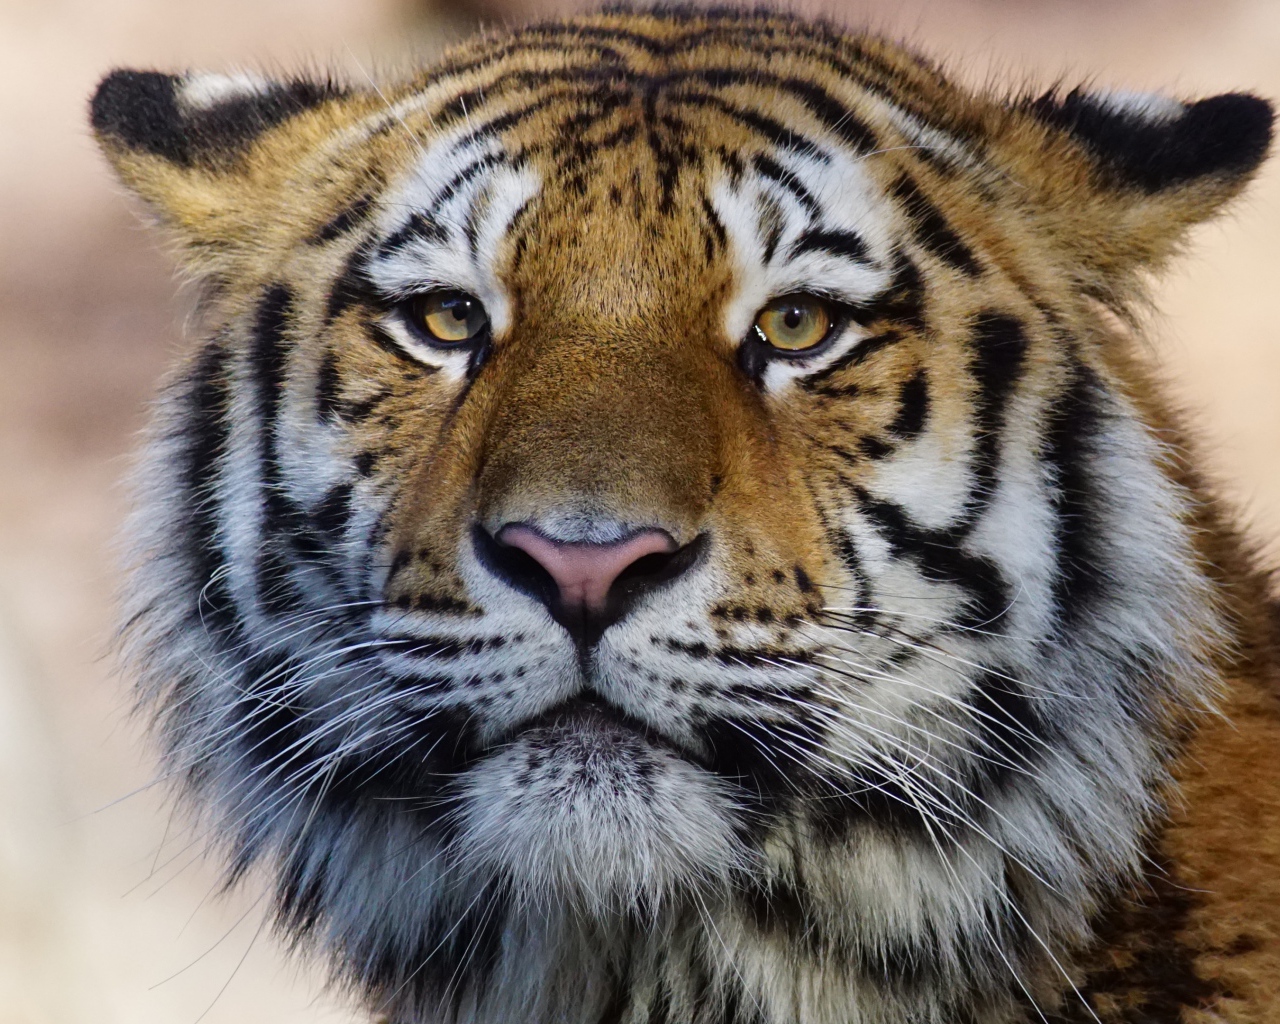 Морда большого полосатого тигра крупным планом